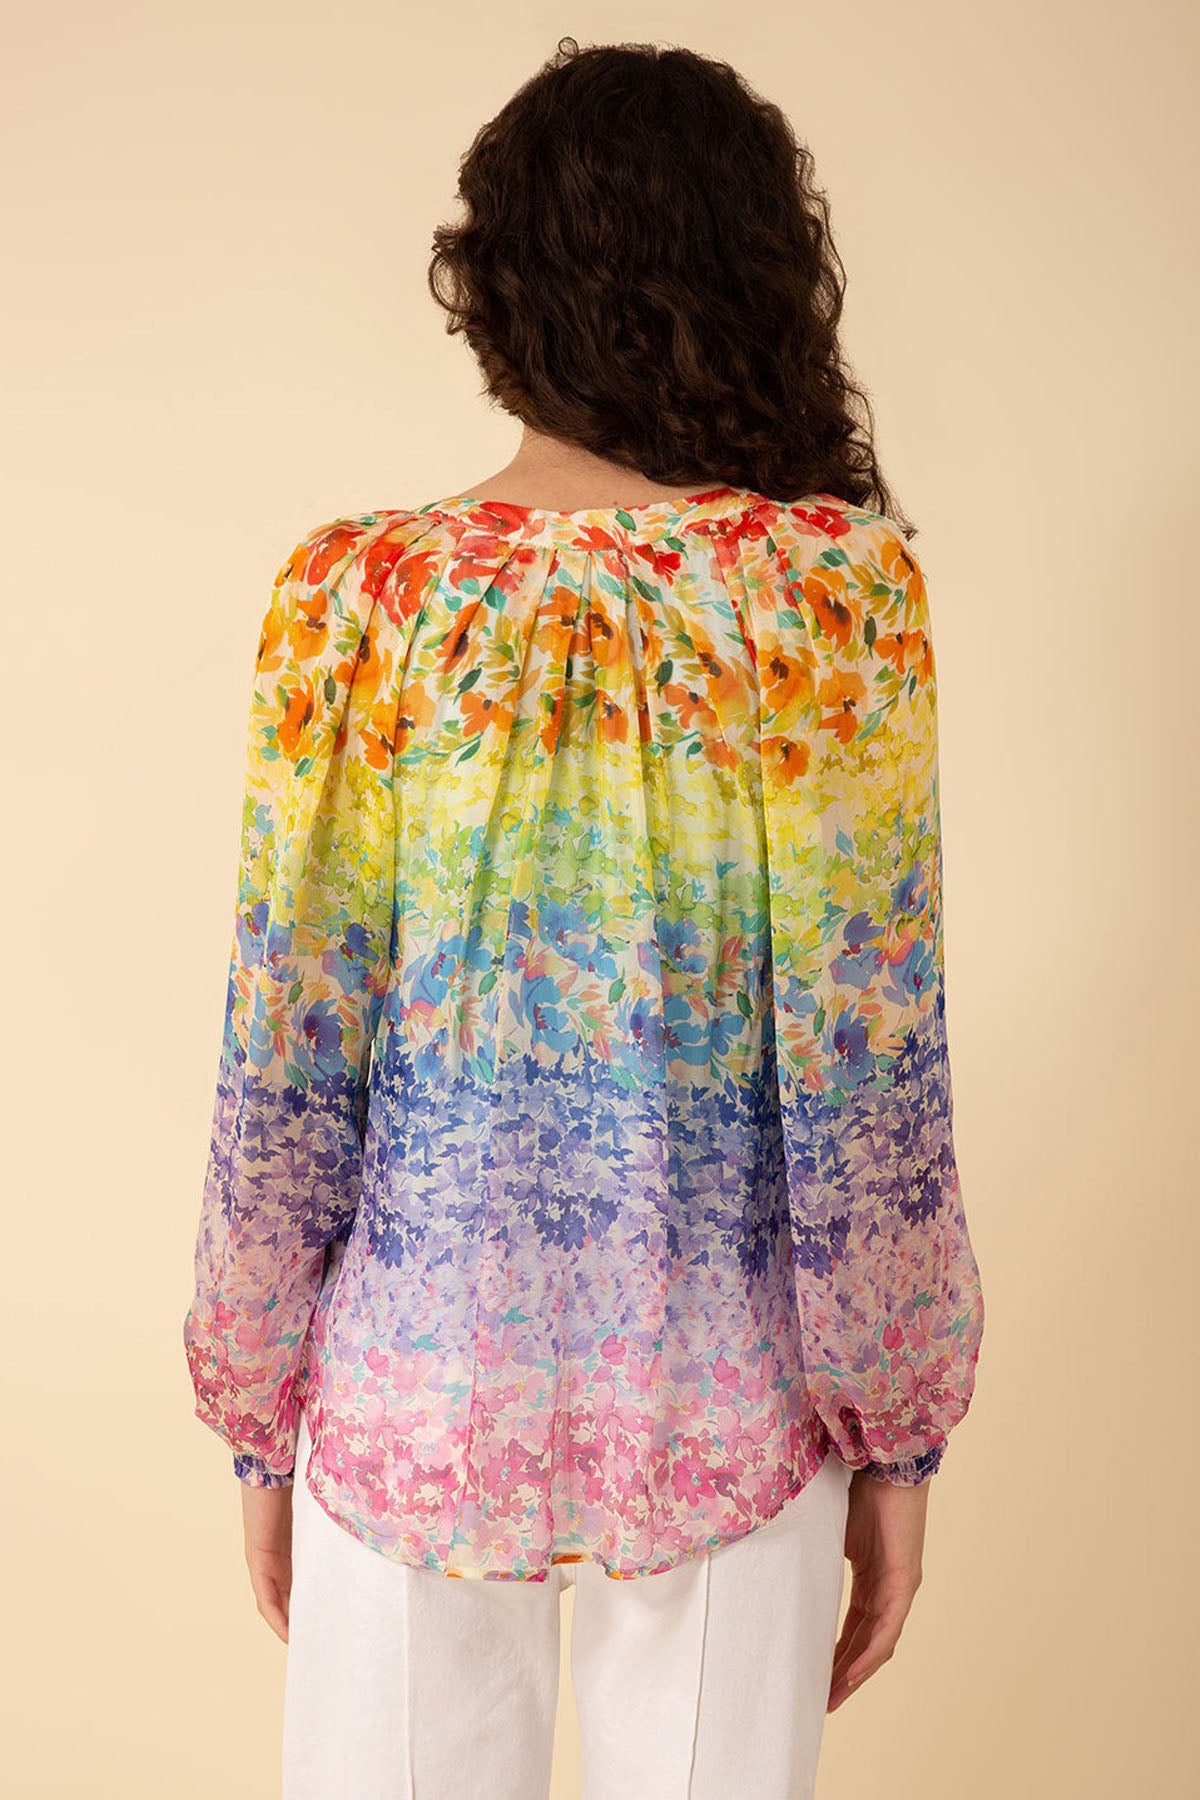 Hale Bob Octavia Geniş Kesim Renkli Desenli İpek Bluz